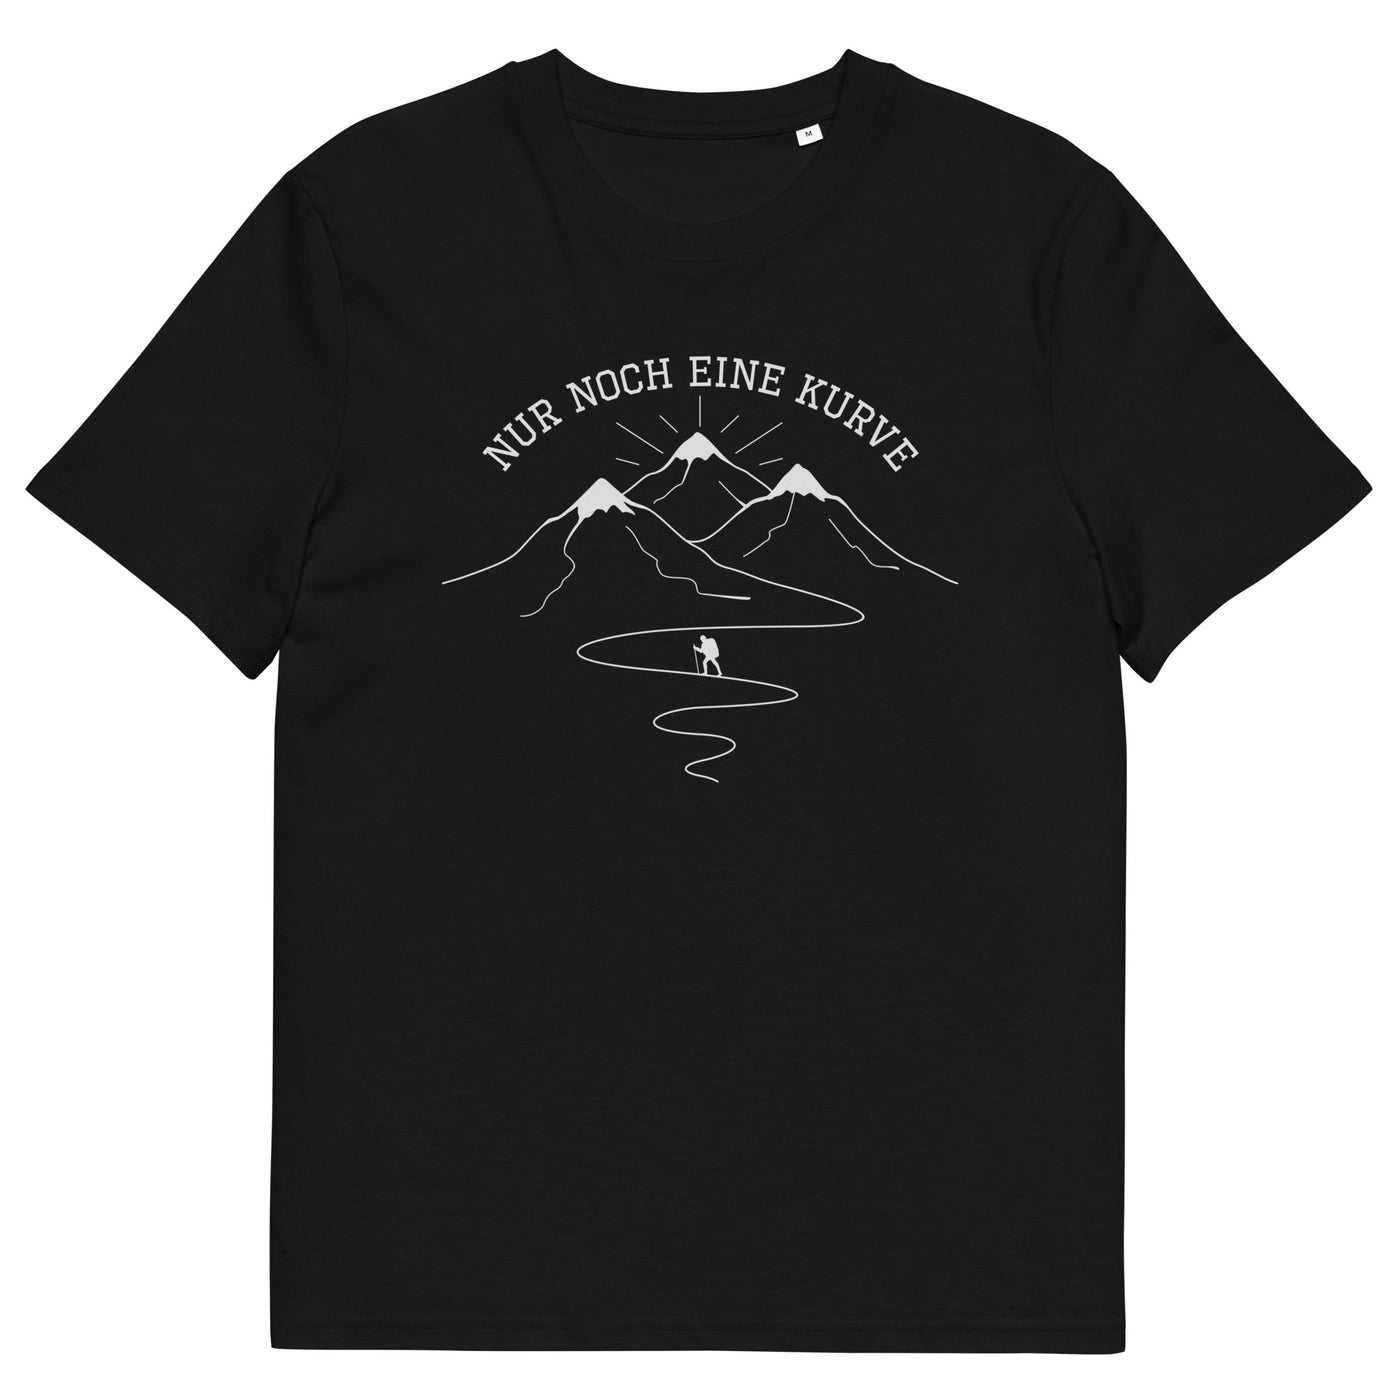 Nur noch eine Kurve - Herren Premium Organic T-Shirt berge wandern xxx yyy zzz Black